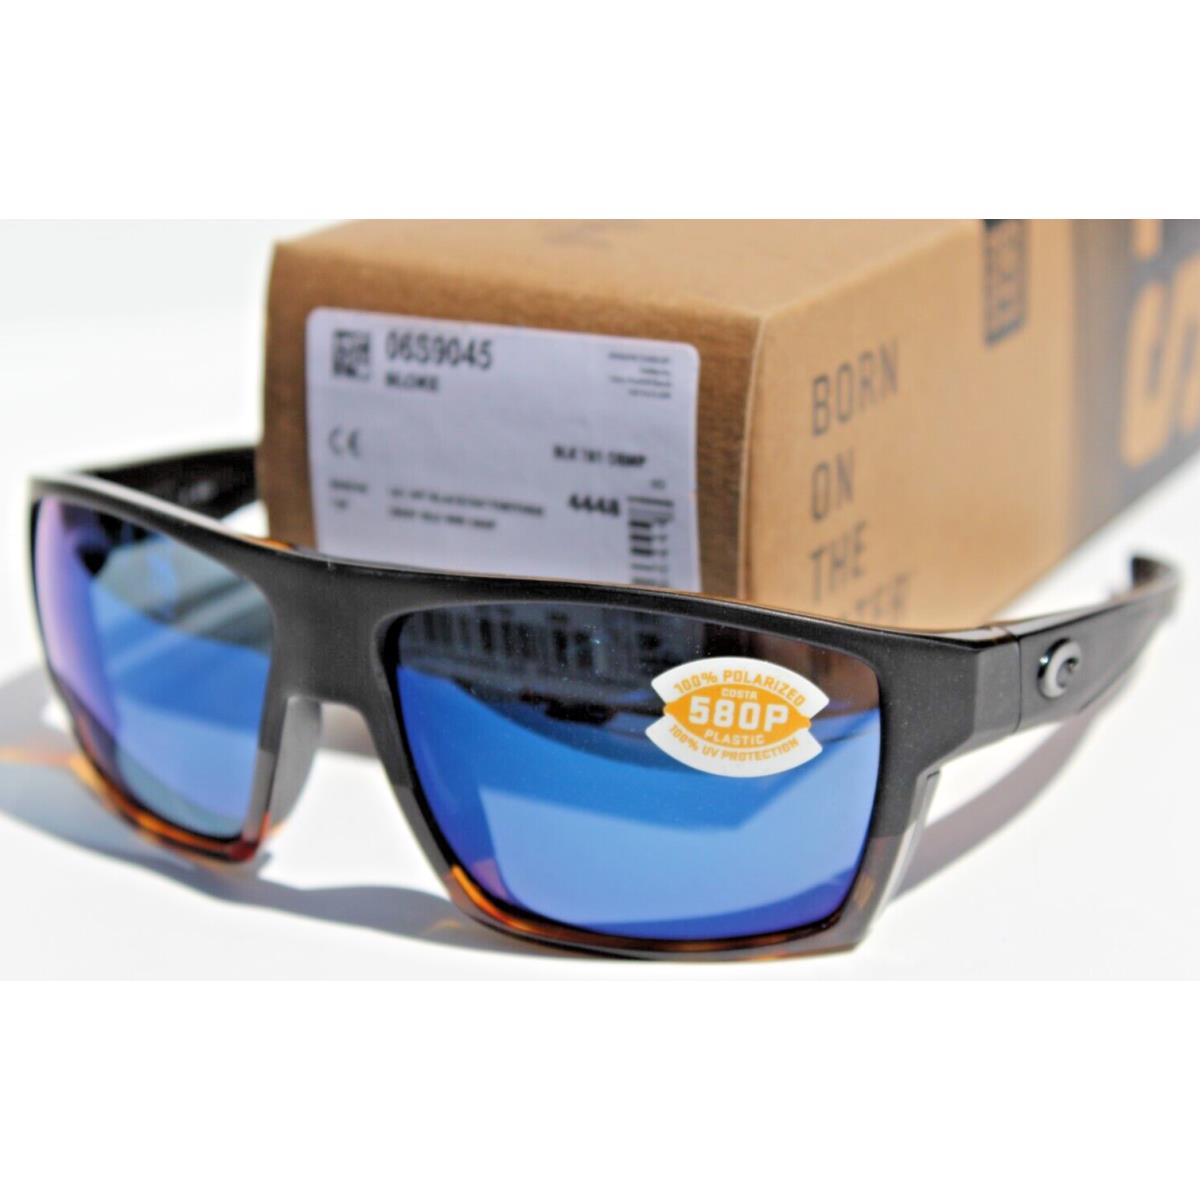 Costa Del Mar sunglasses  - Black Tortoise Frame, Blue Lens 3